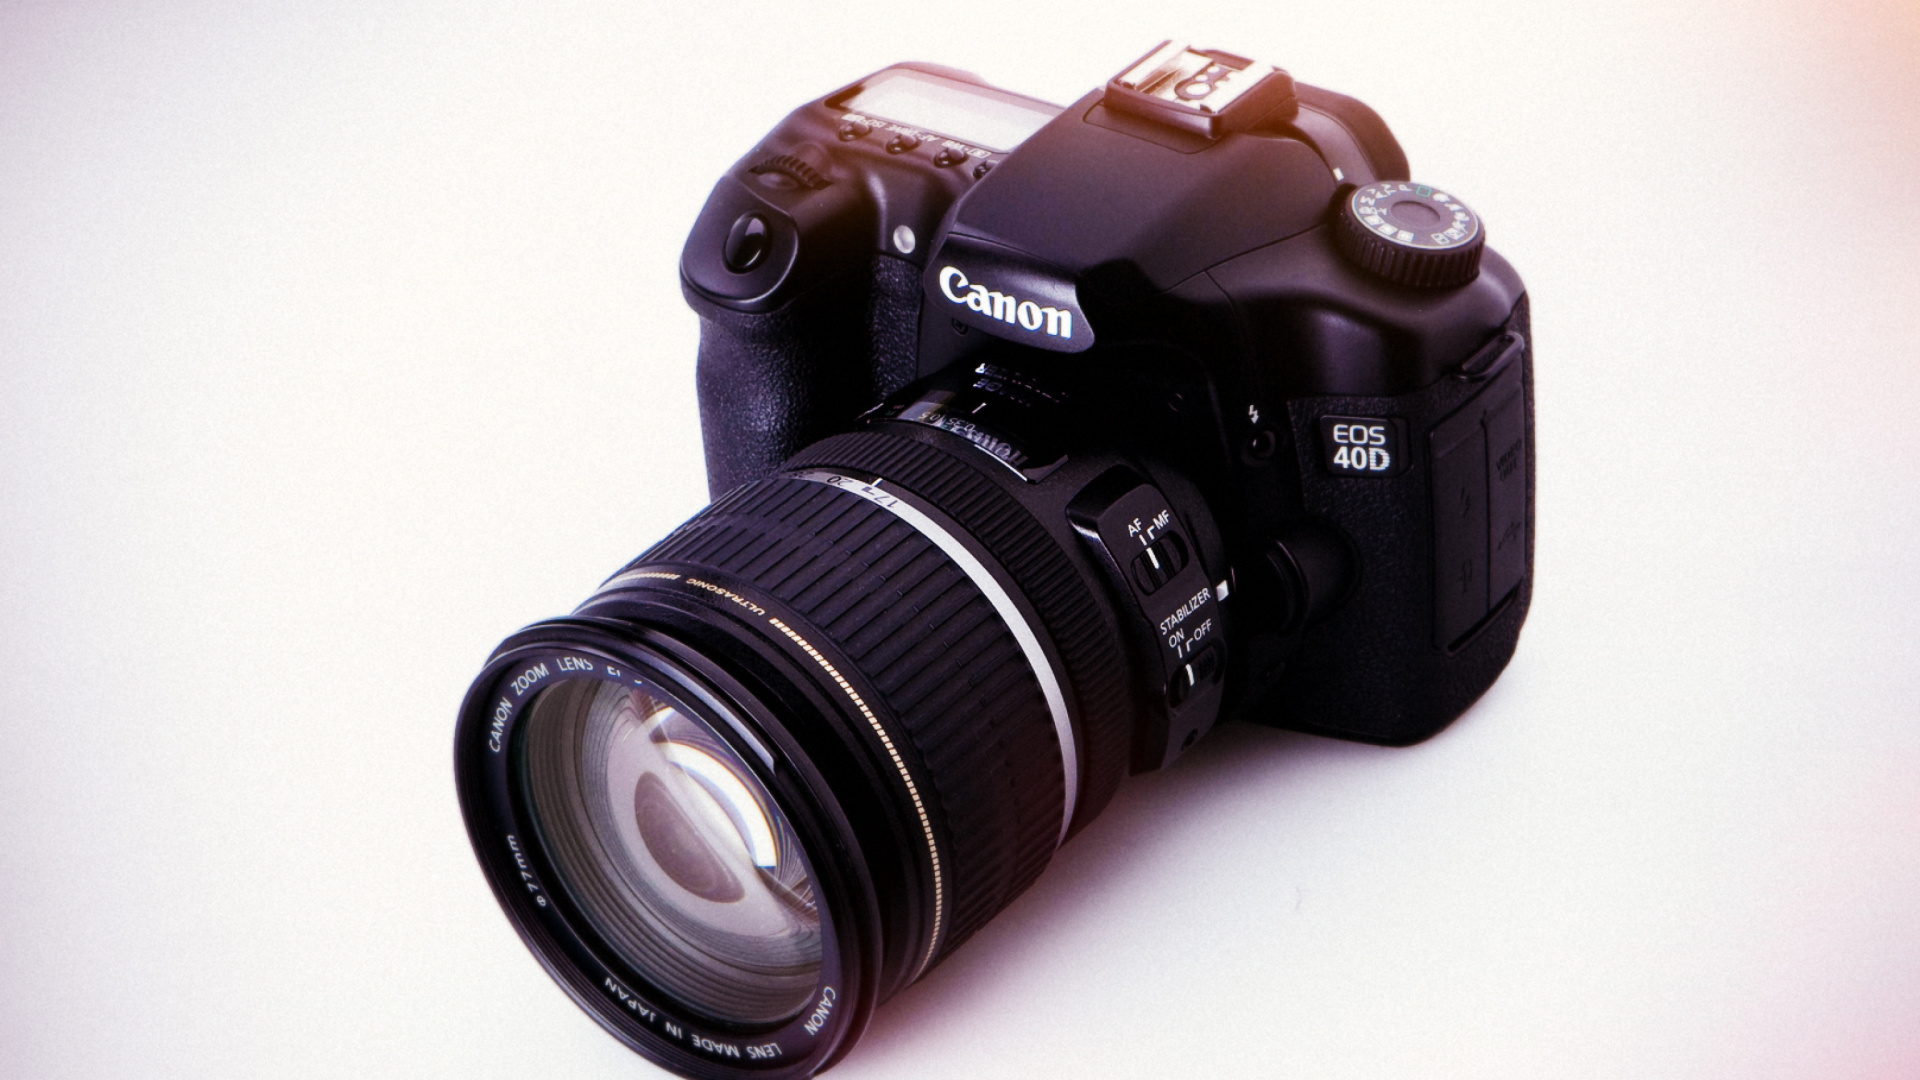 Canon EOS 40D Digital SLR Camera wallpaper 1920x1080